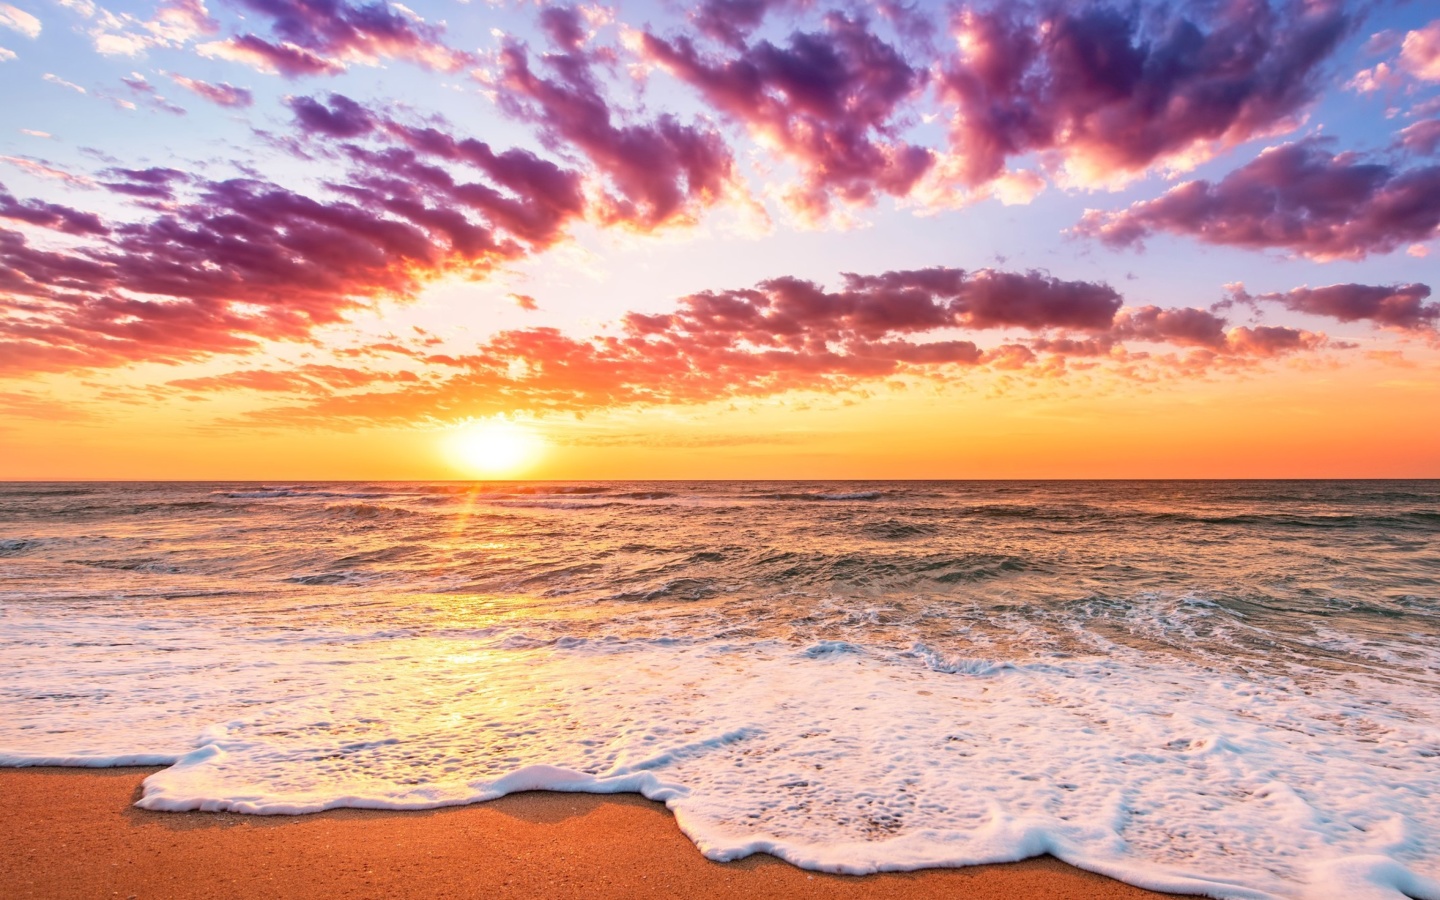 Unbelievable sunset screenshot #1 1440x900